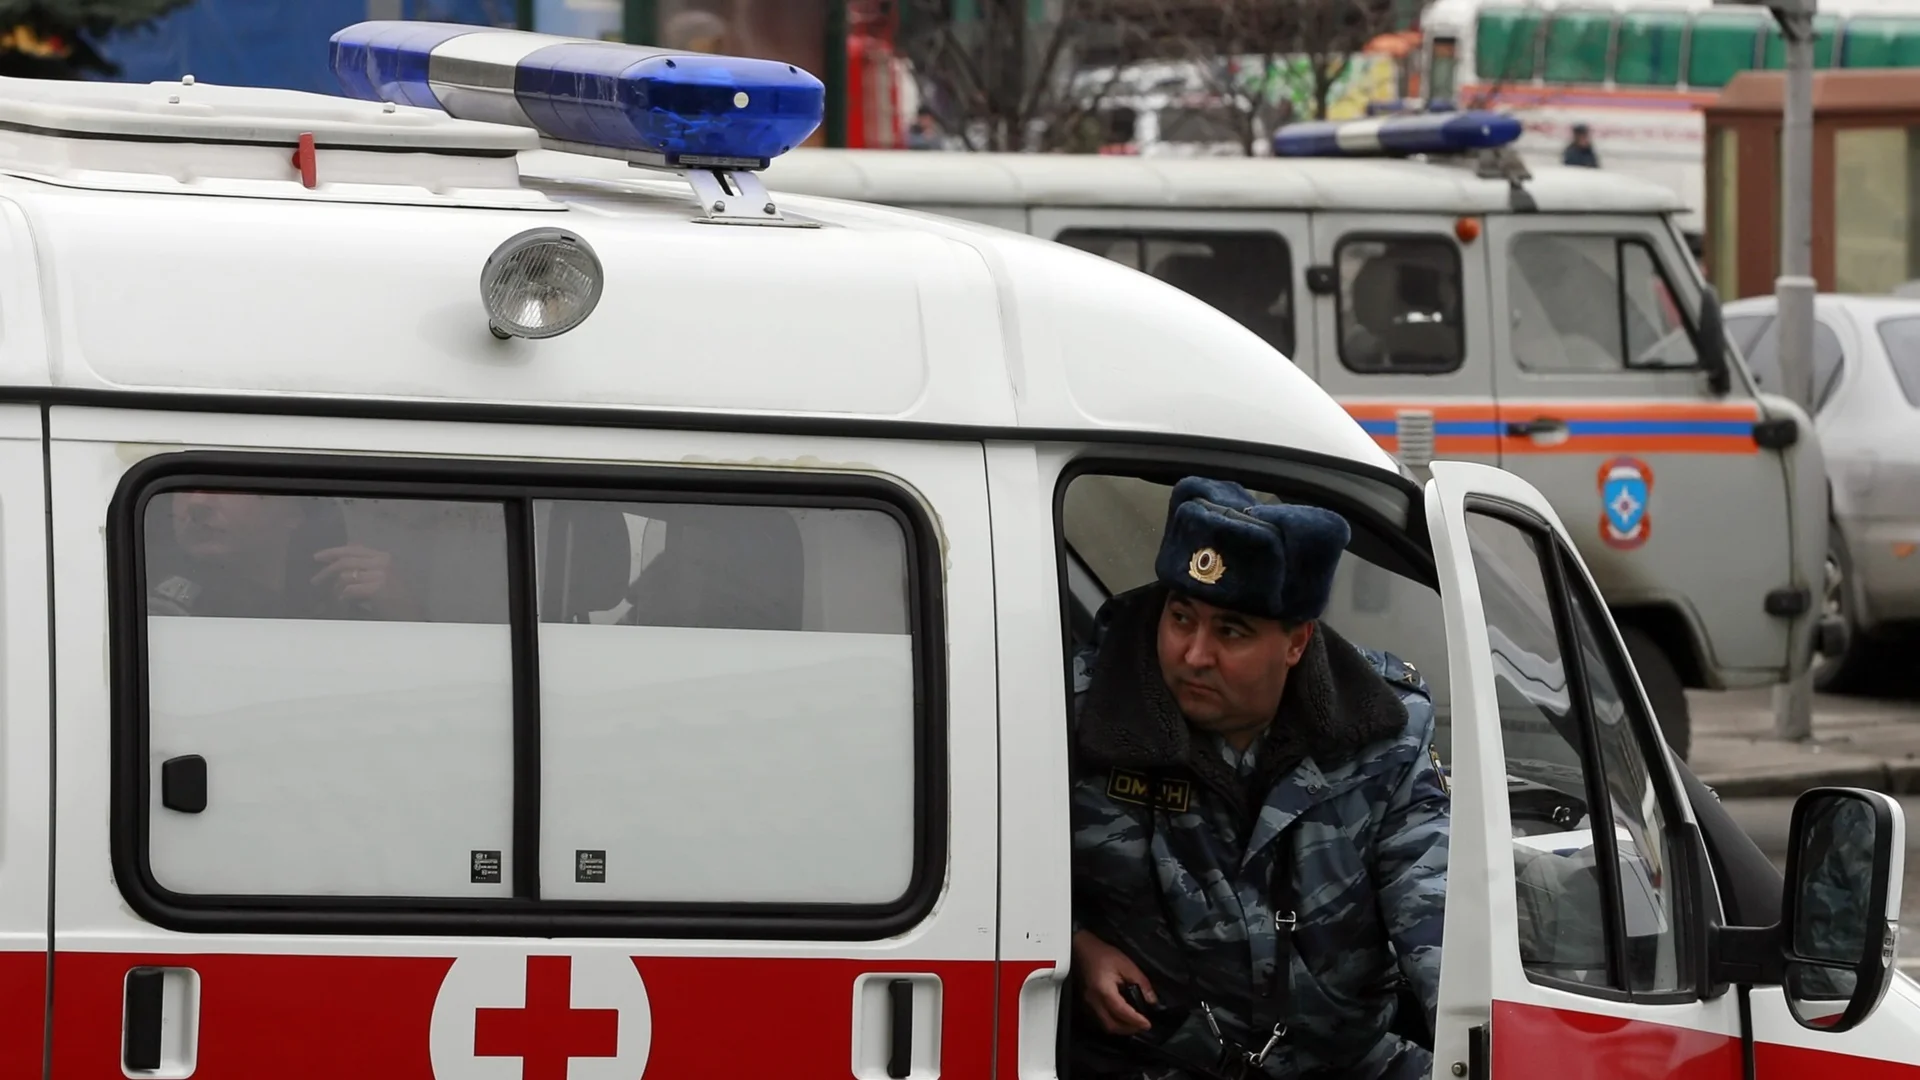 Абсурд: Линейката, дошла да помага на Навални, е карала с 318 км/ч?